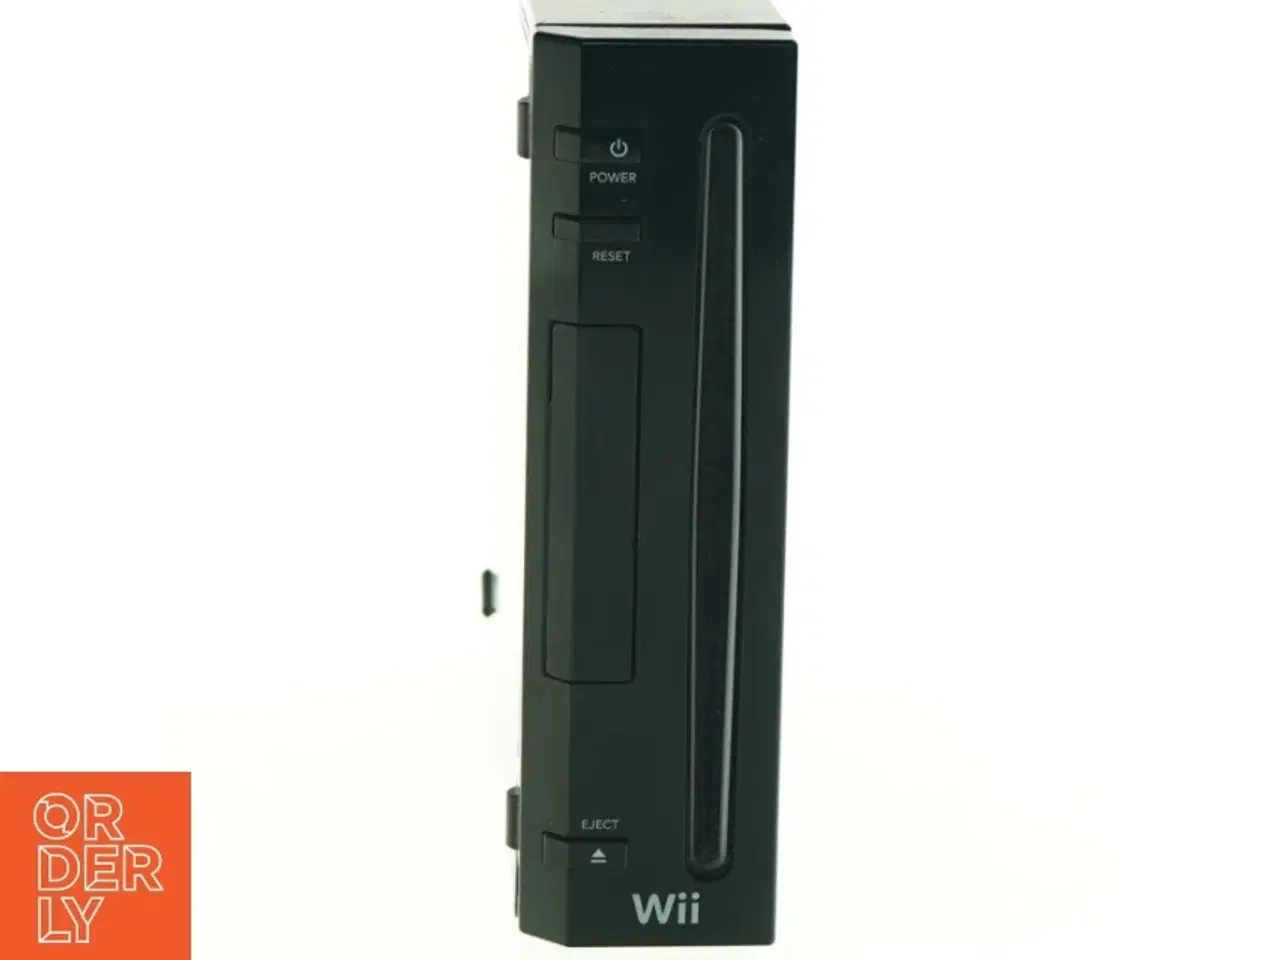 Billede 1 - Nintendo Wii Konsol fra Wii (str. 21 x, 16 x 4 cm)